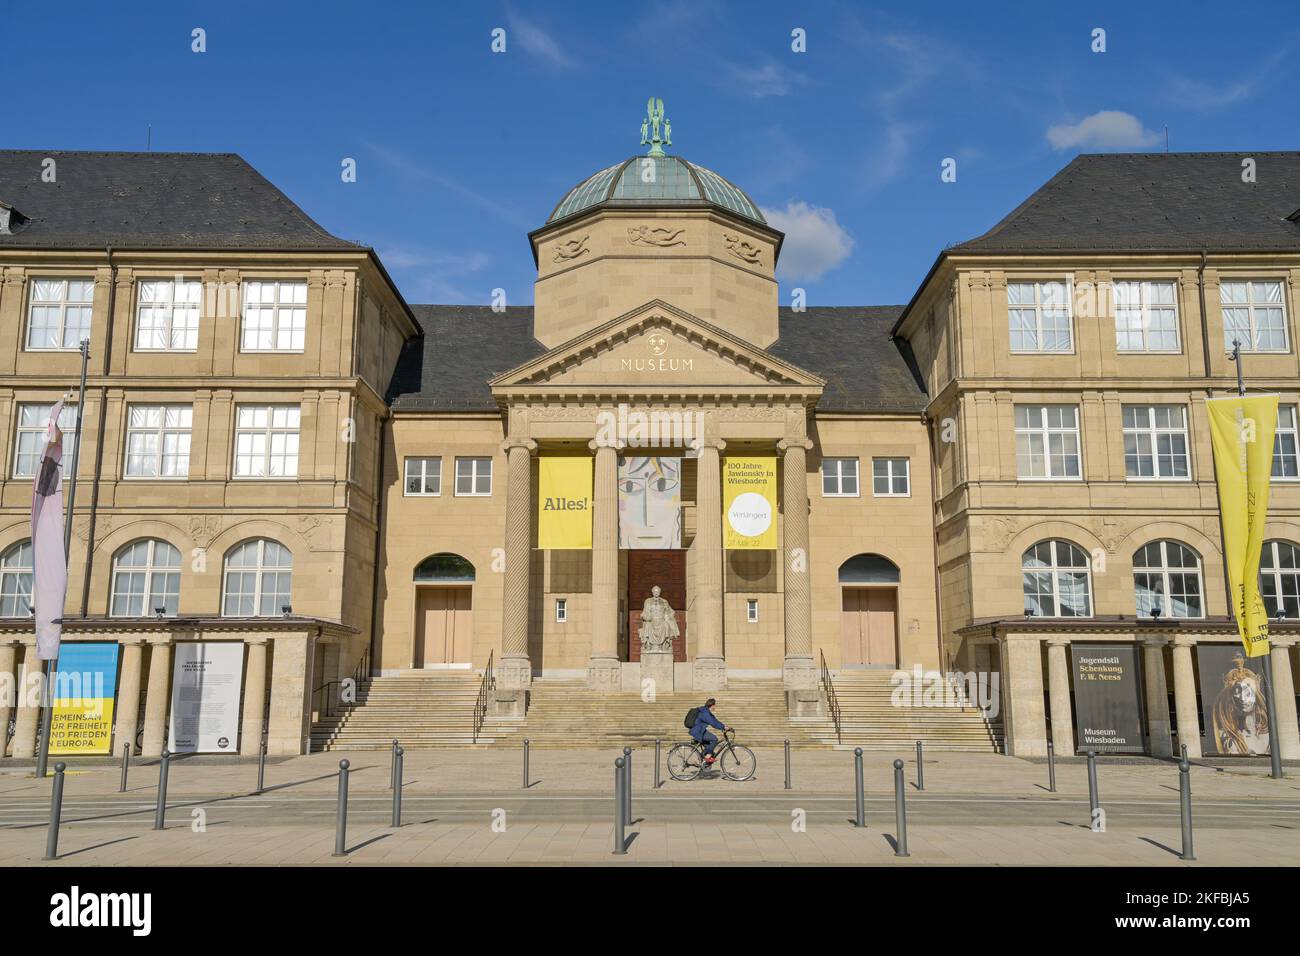 Musée Wiesbaden, Hessisches Landesmuseum für Kunst und Natur, Friedrich-Ebert-Allee, Wiesbaden, Hessen, Allemagne Banque D'Images